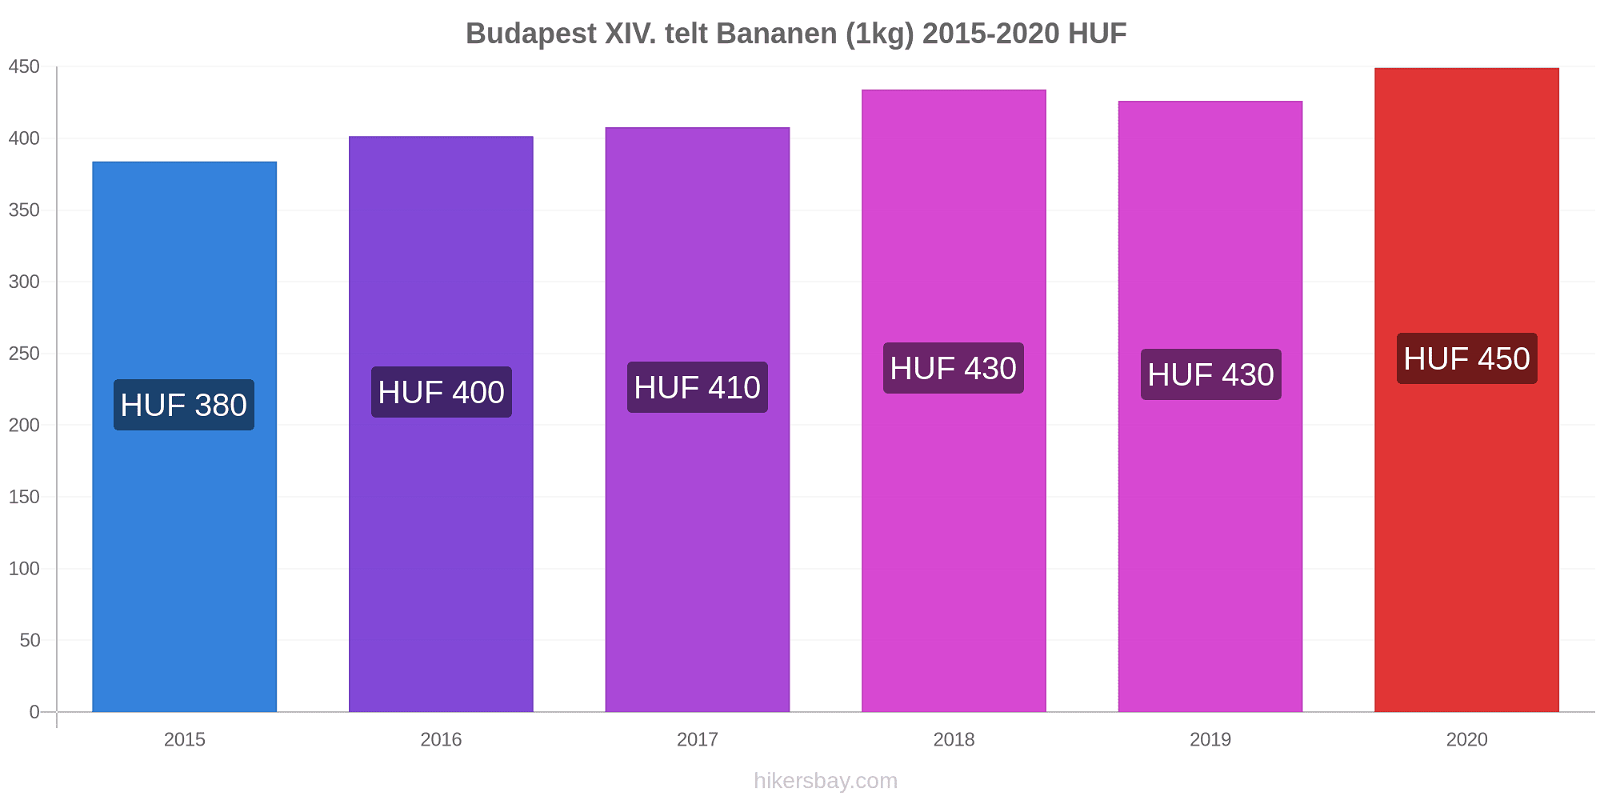 Budapest XIV. telt prijswijzigingen Banaan (1kg) hikersbay.com